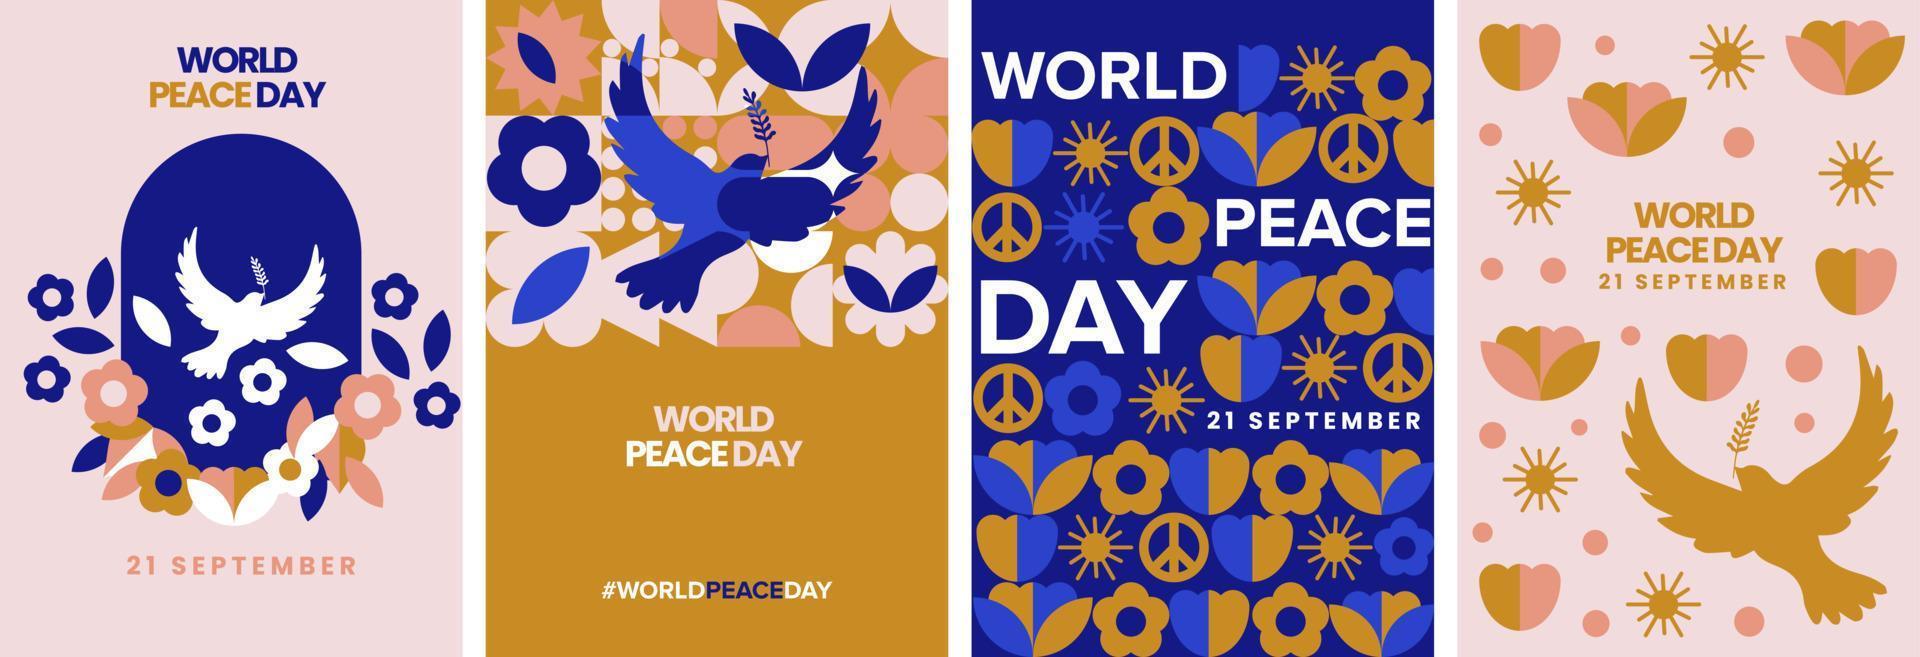 día de la paz mundial de moda geométrica moderna. Afiche del 21 de septiembre, colección de vectores de tarjetas de felicitación